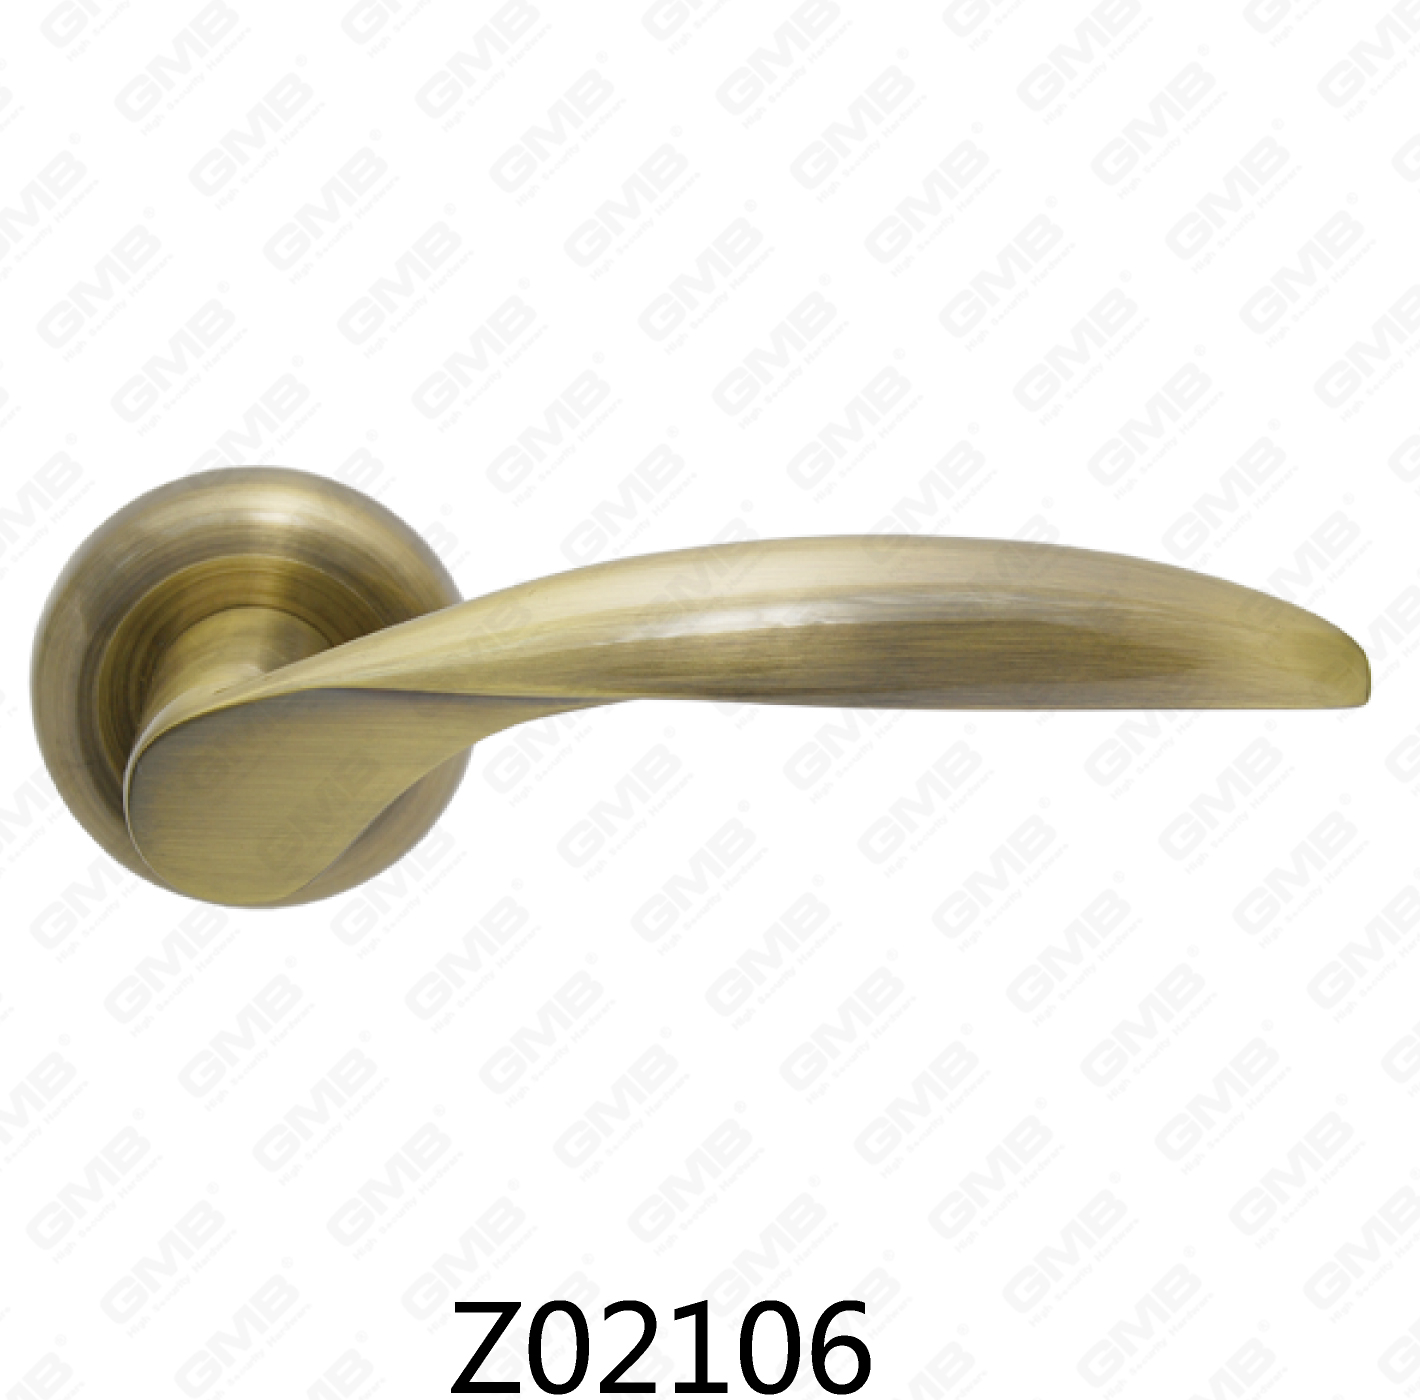 Asa de puerta de roseta de aluminio de aleación de zinc Zamak con roseta redonda (Z02106)